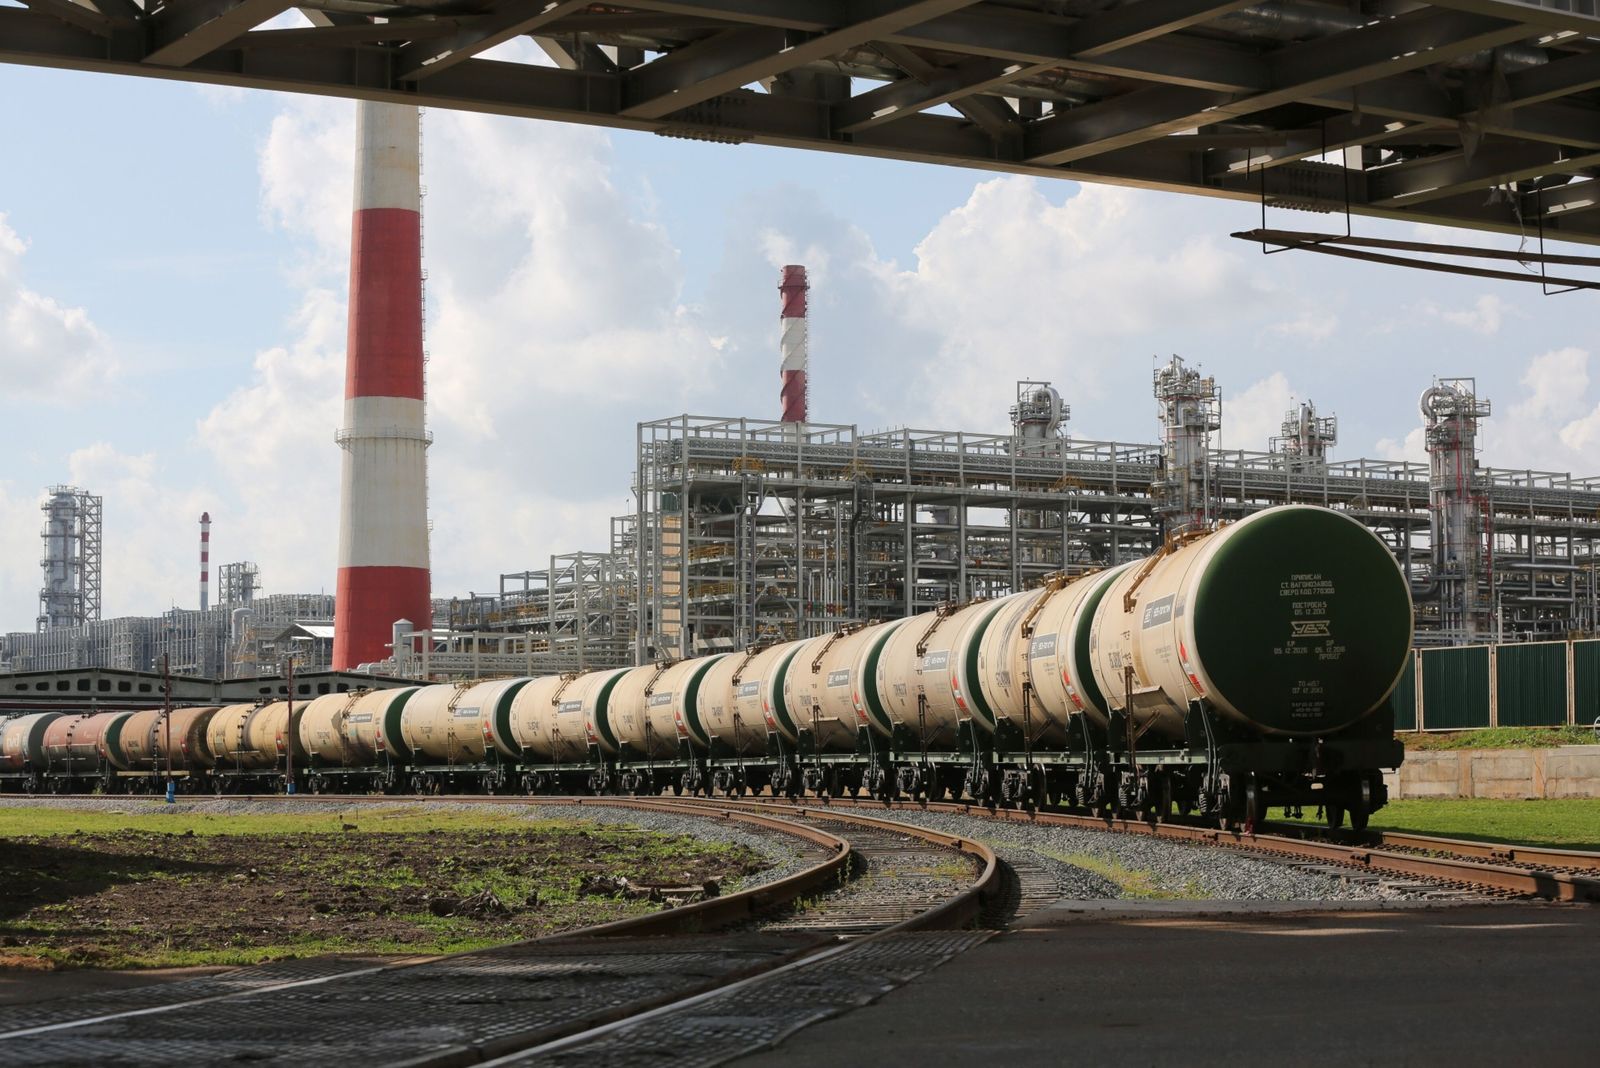 هجمات المُسيرات على مصافي النفط تؤثر على صادرات الديزل الروسية